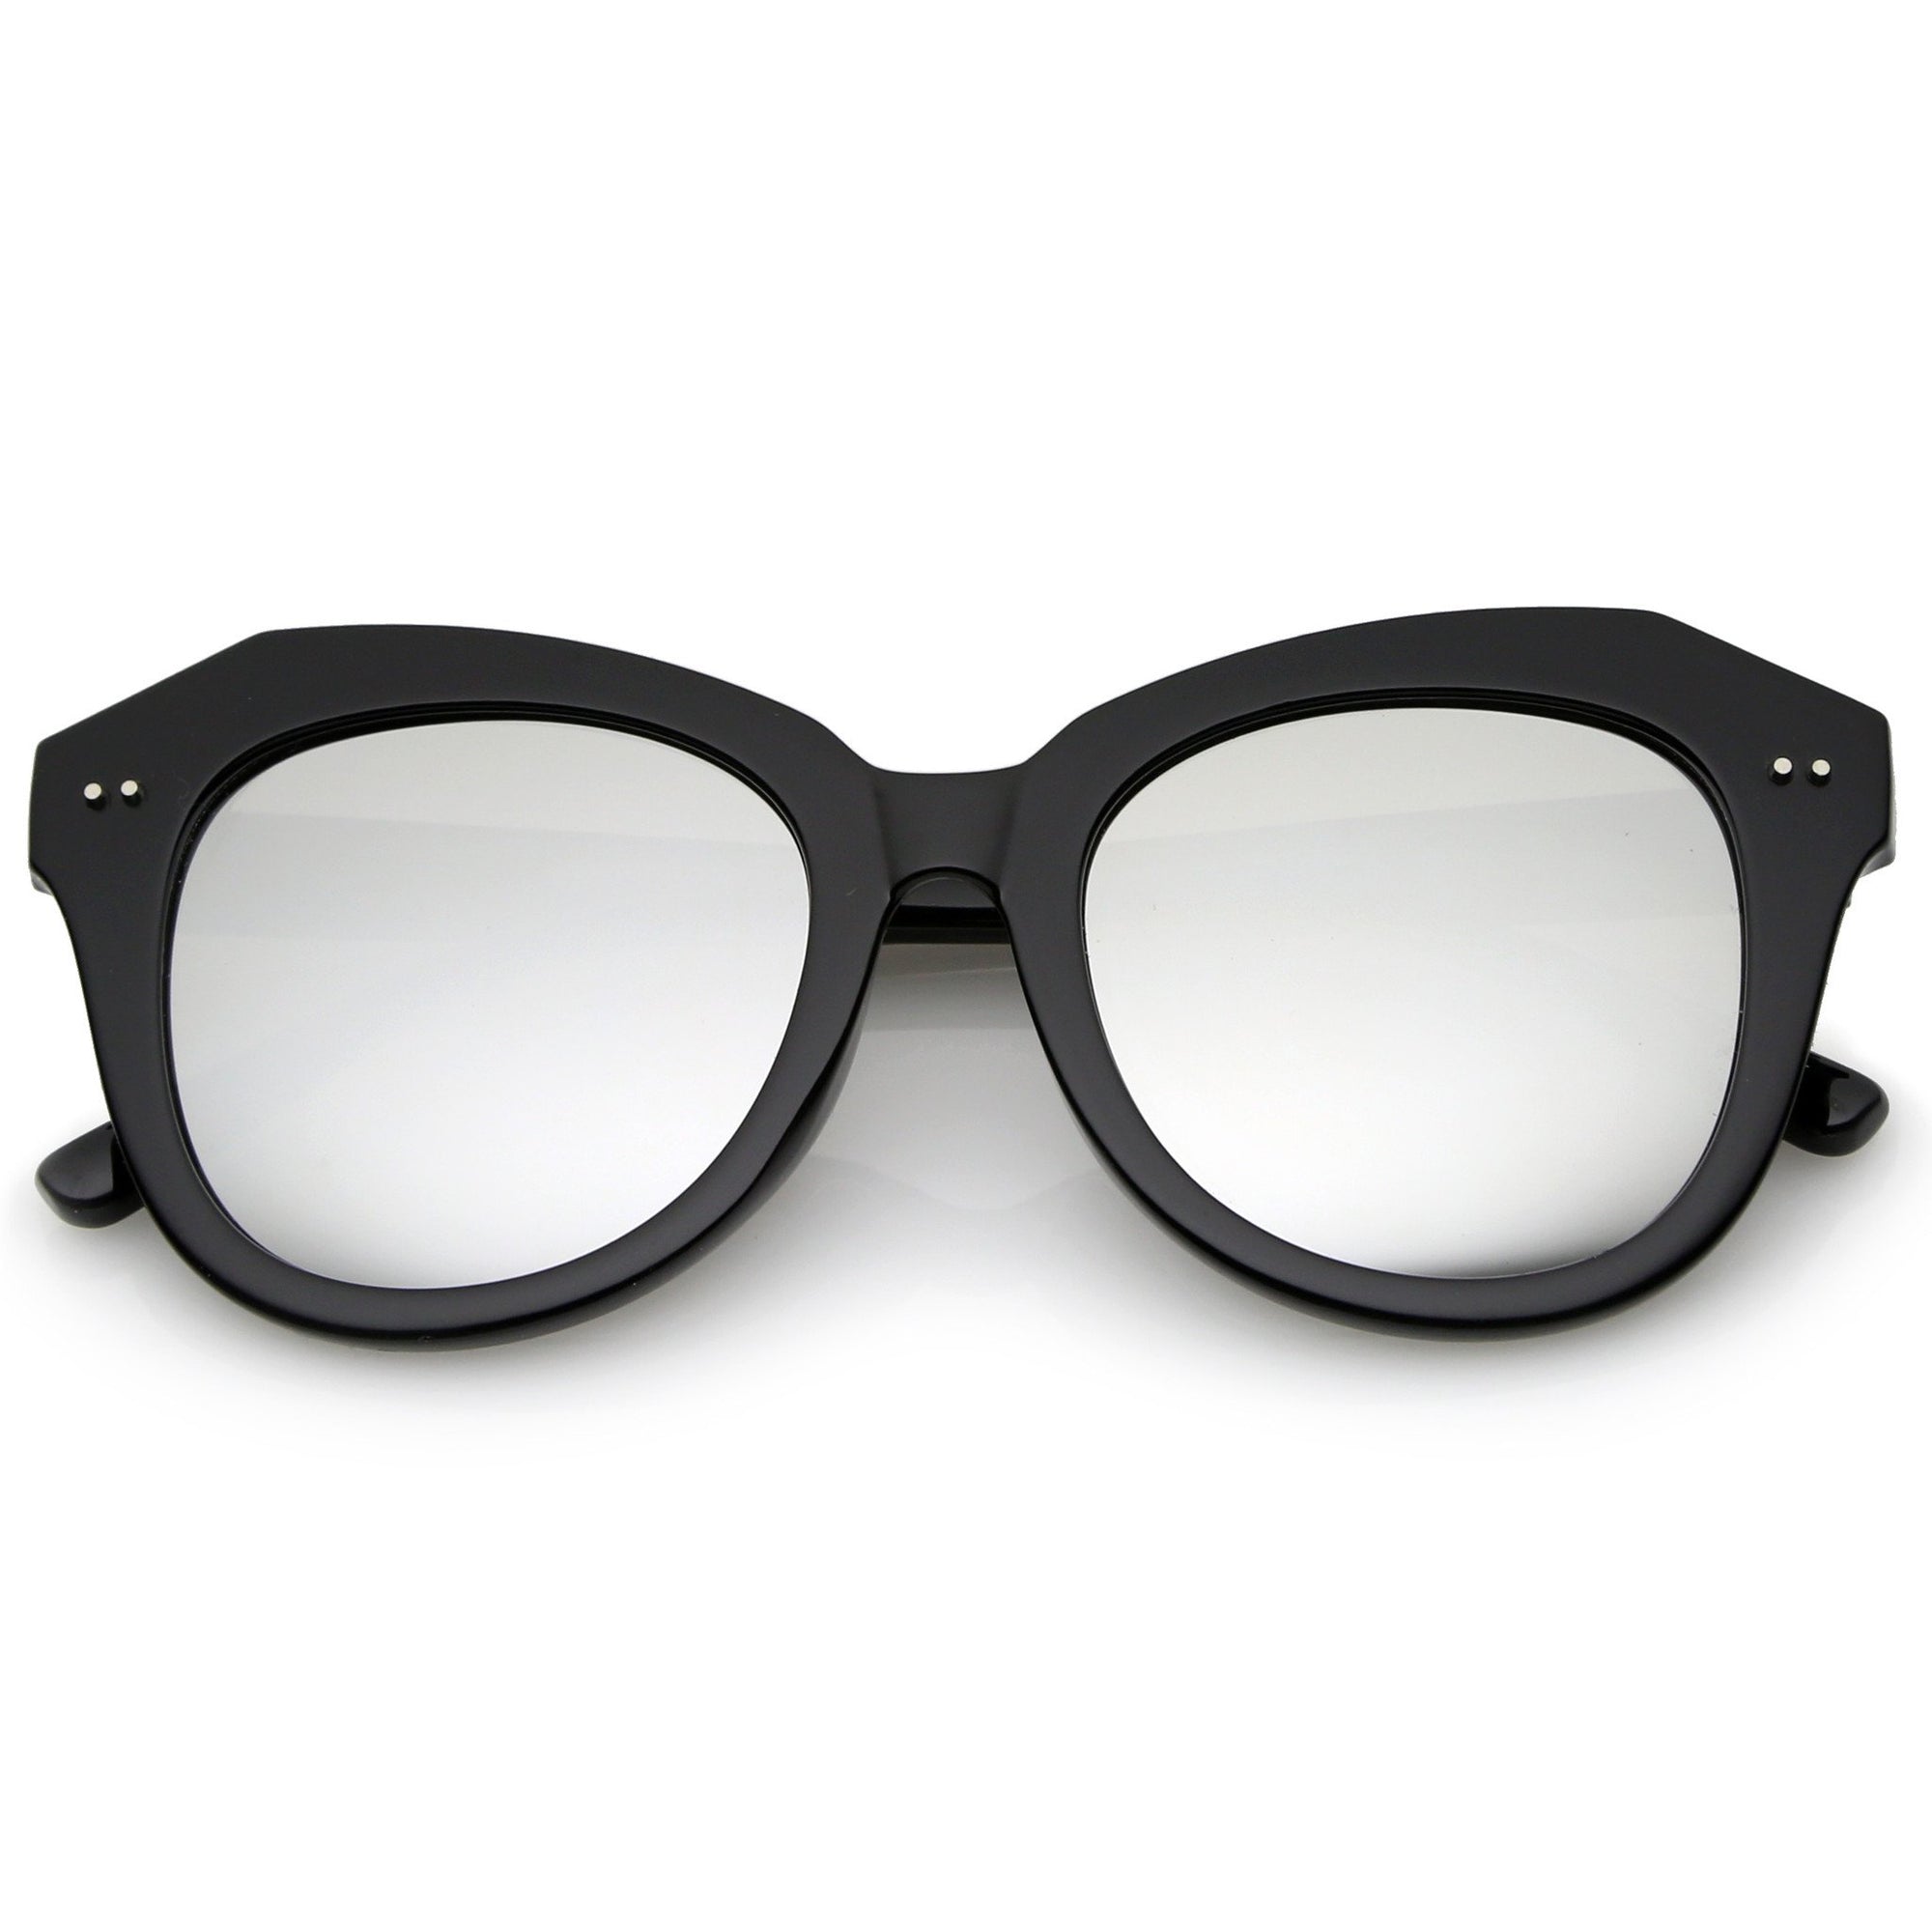 Gafas de sol extragrandes con lentes espejadas tipo ojo de gato para mujer A916